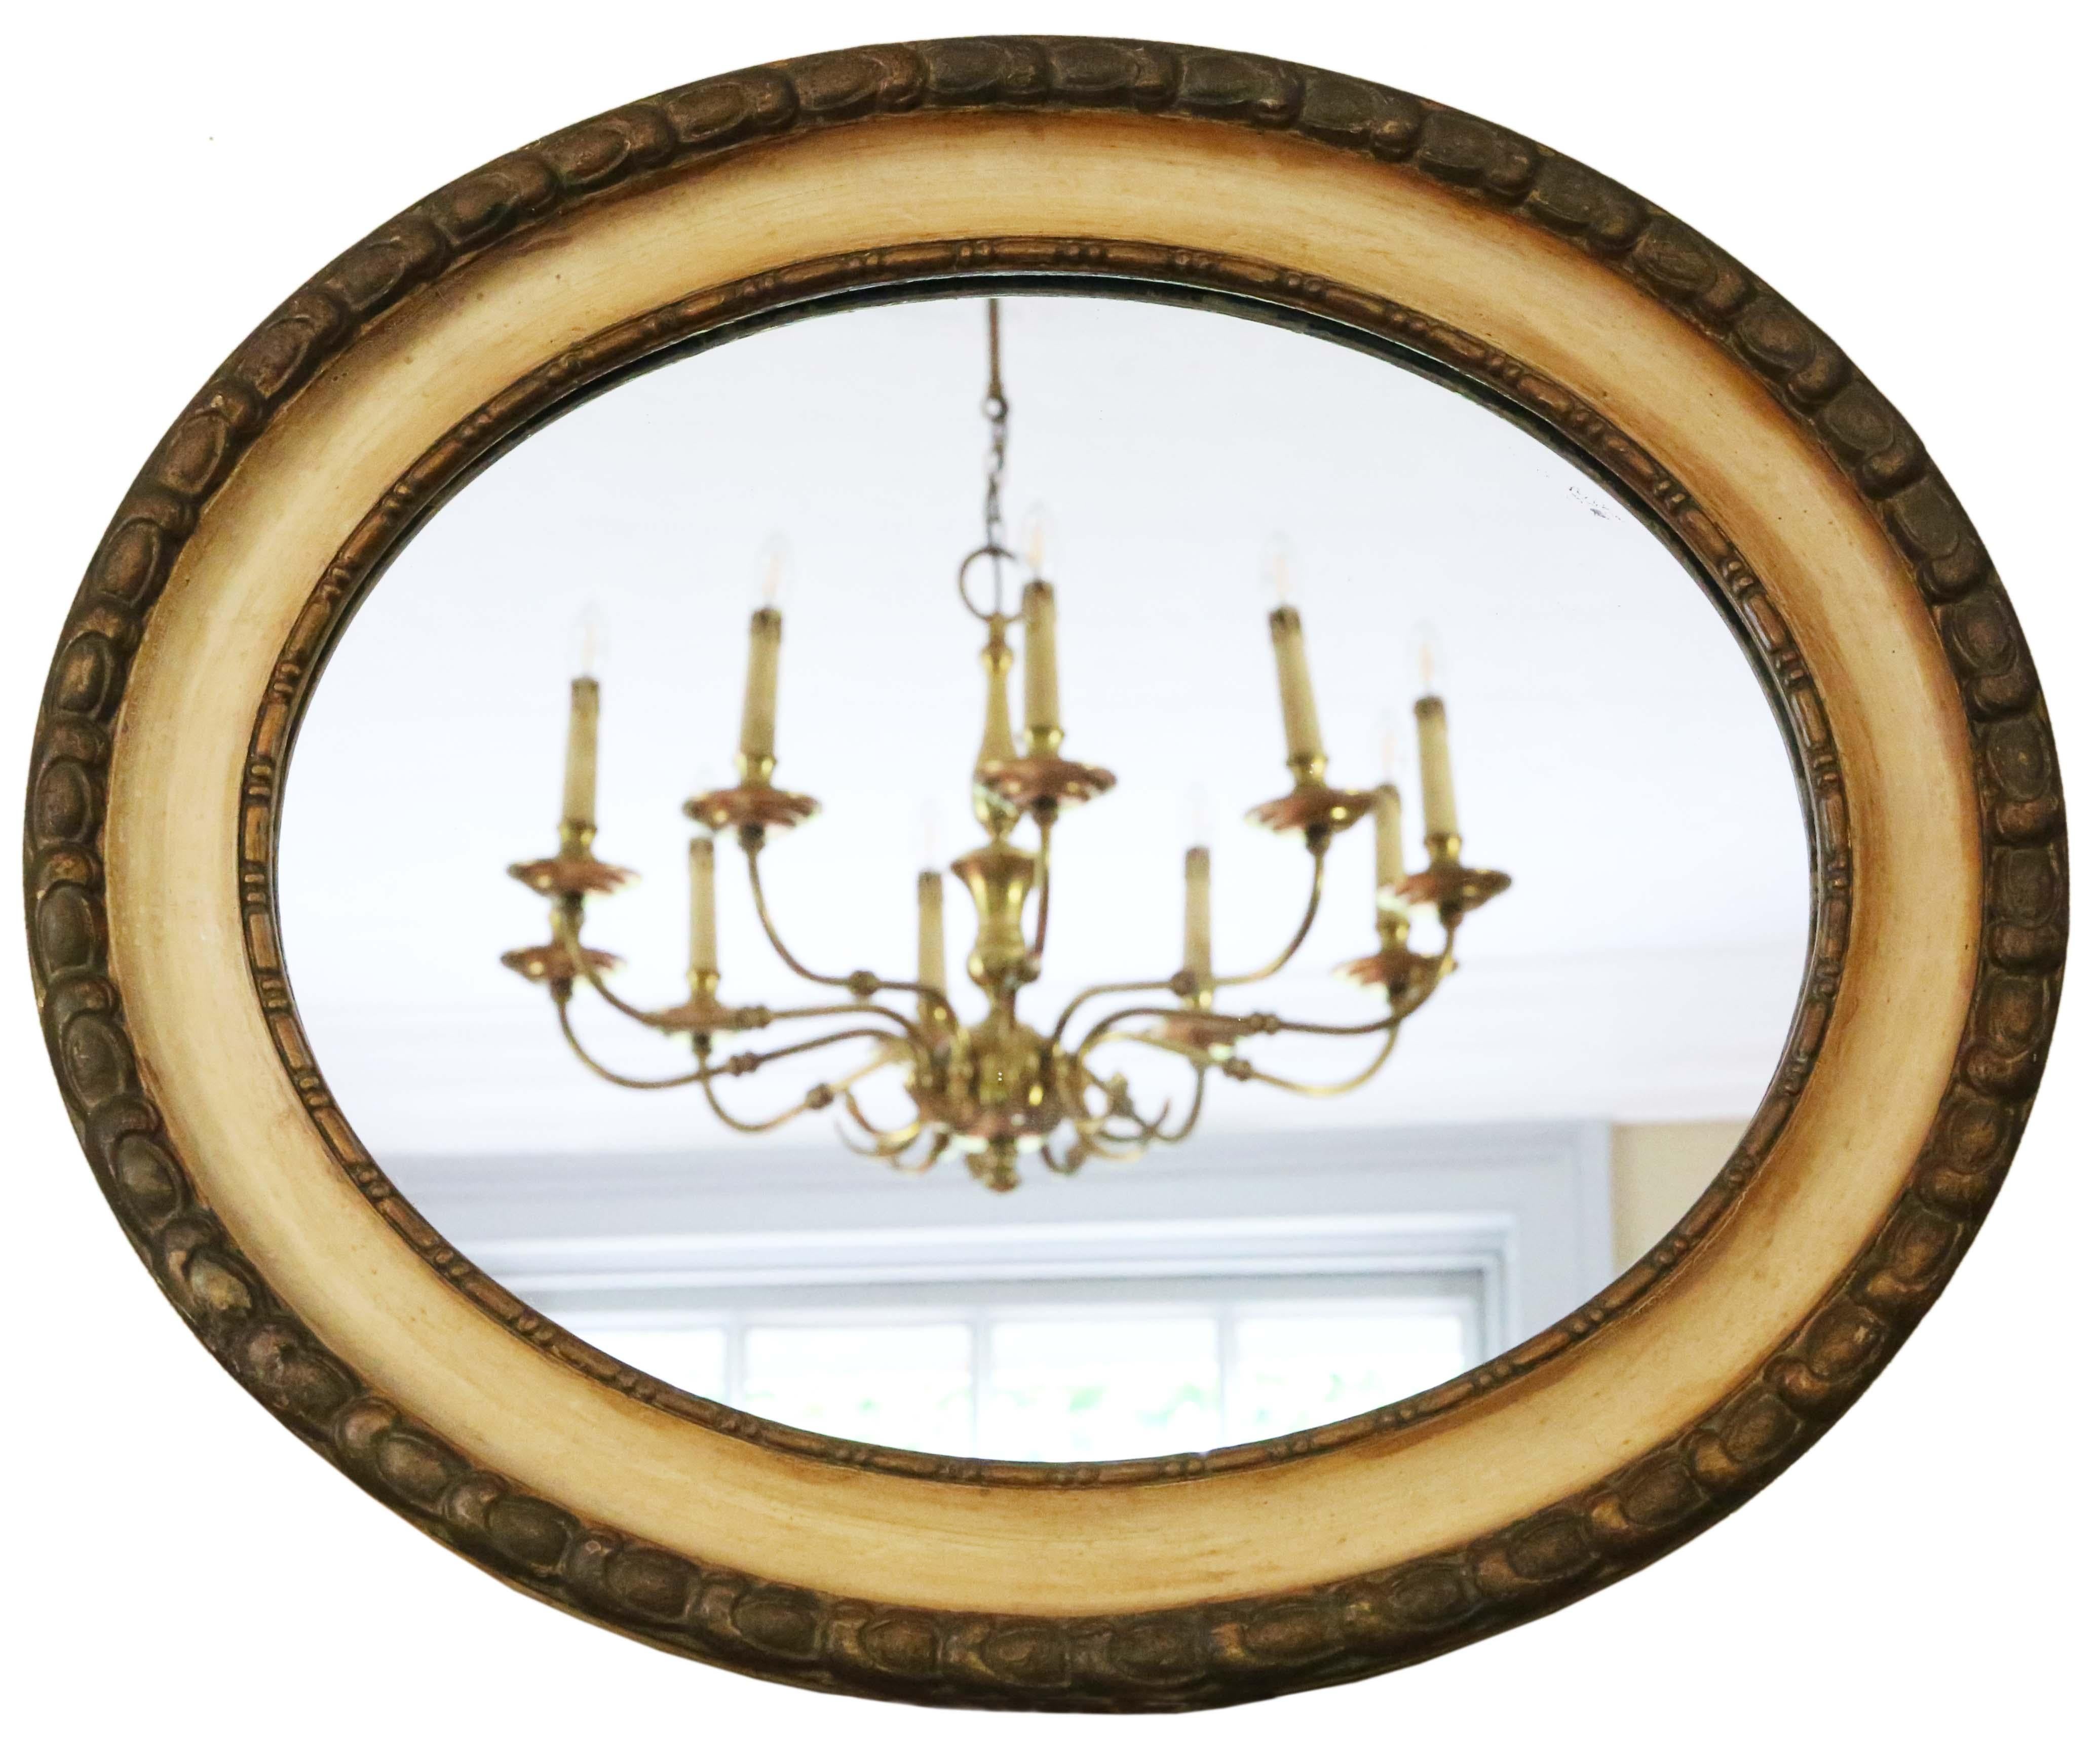 Miroir mural ovale, doré et crème, de qualité ancienne, 19ème siècle.

Il s'agit d'une découverte rare et impressionnante, qui trouverait sa place au bon endroit. Il n'y a pas de joints lâches ni de ver à bois.

Le verre miroir présente une très